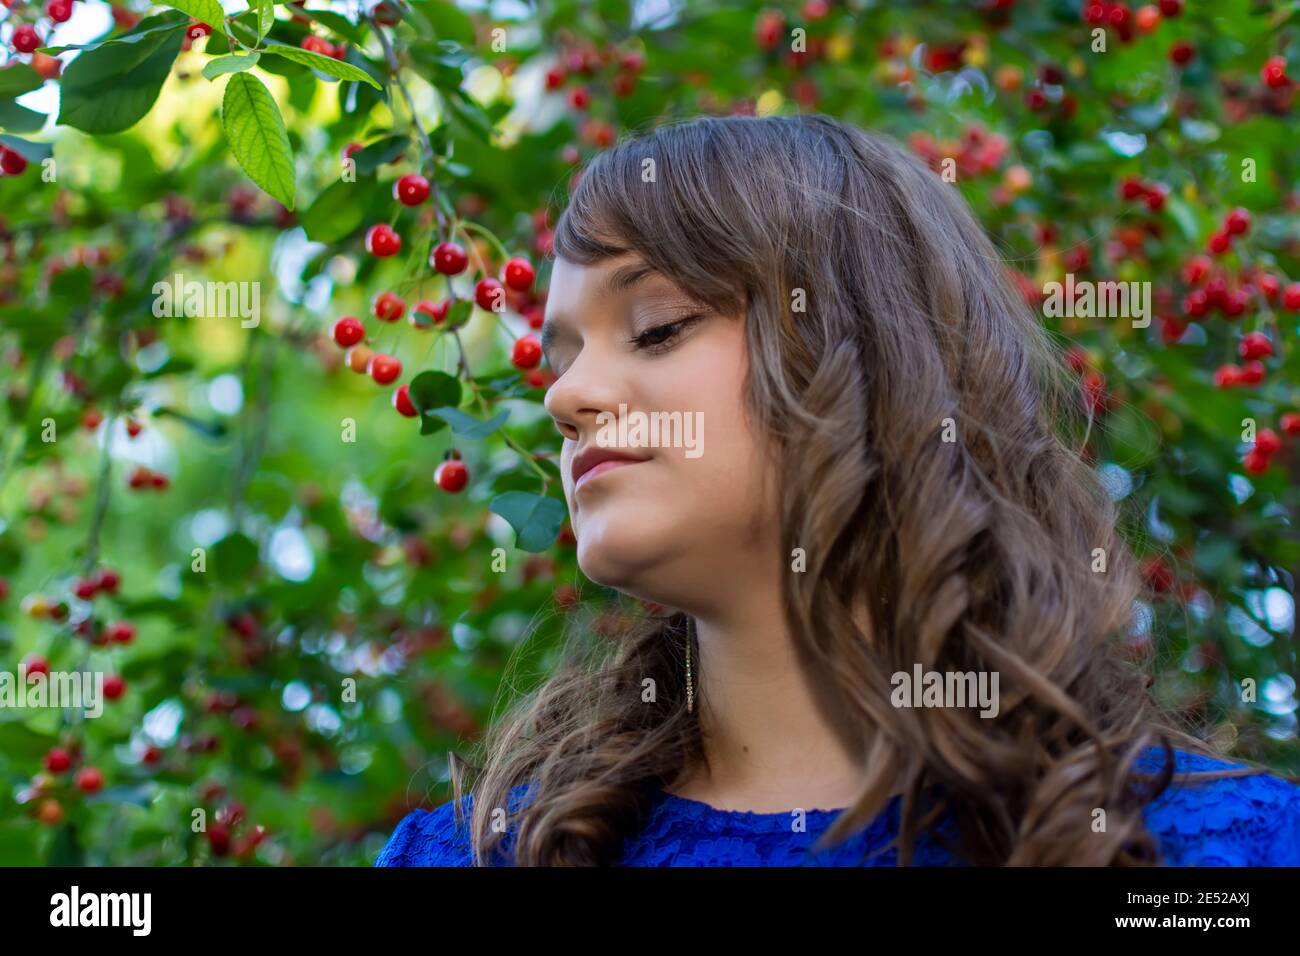 Jolie fille souriant en prenant des photos dans un jardin de cerises. Portrait de jeune fille avec maquillage. Fruits mûrs à l'arrière-plan. Représentant l'été Banque D'Images